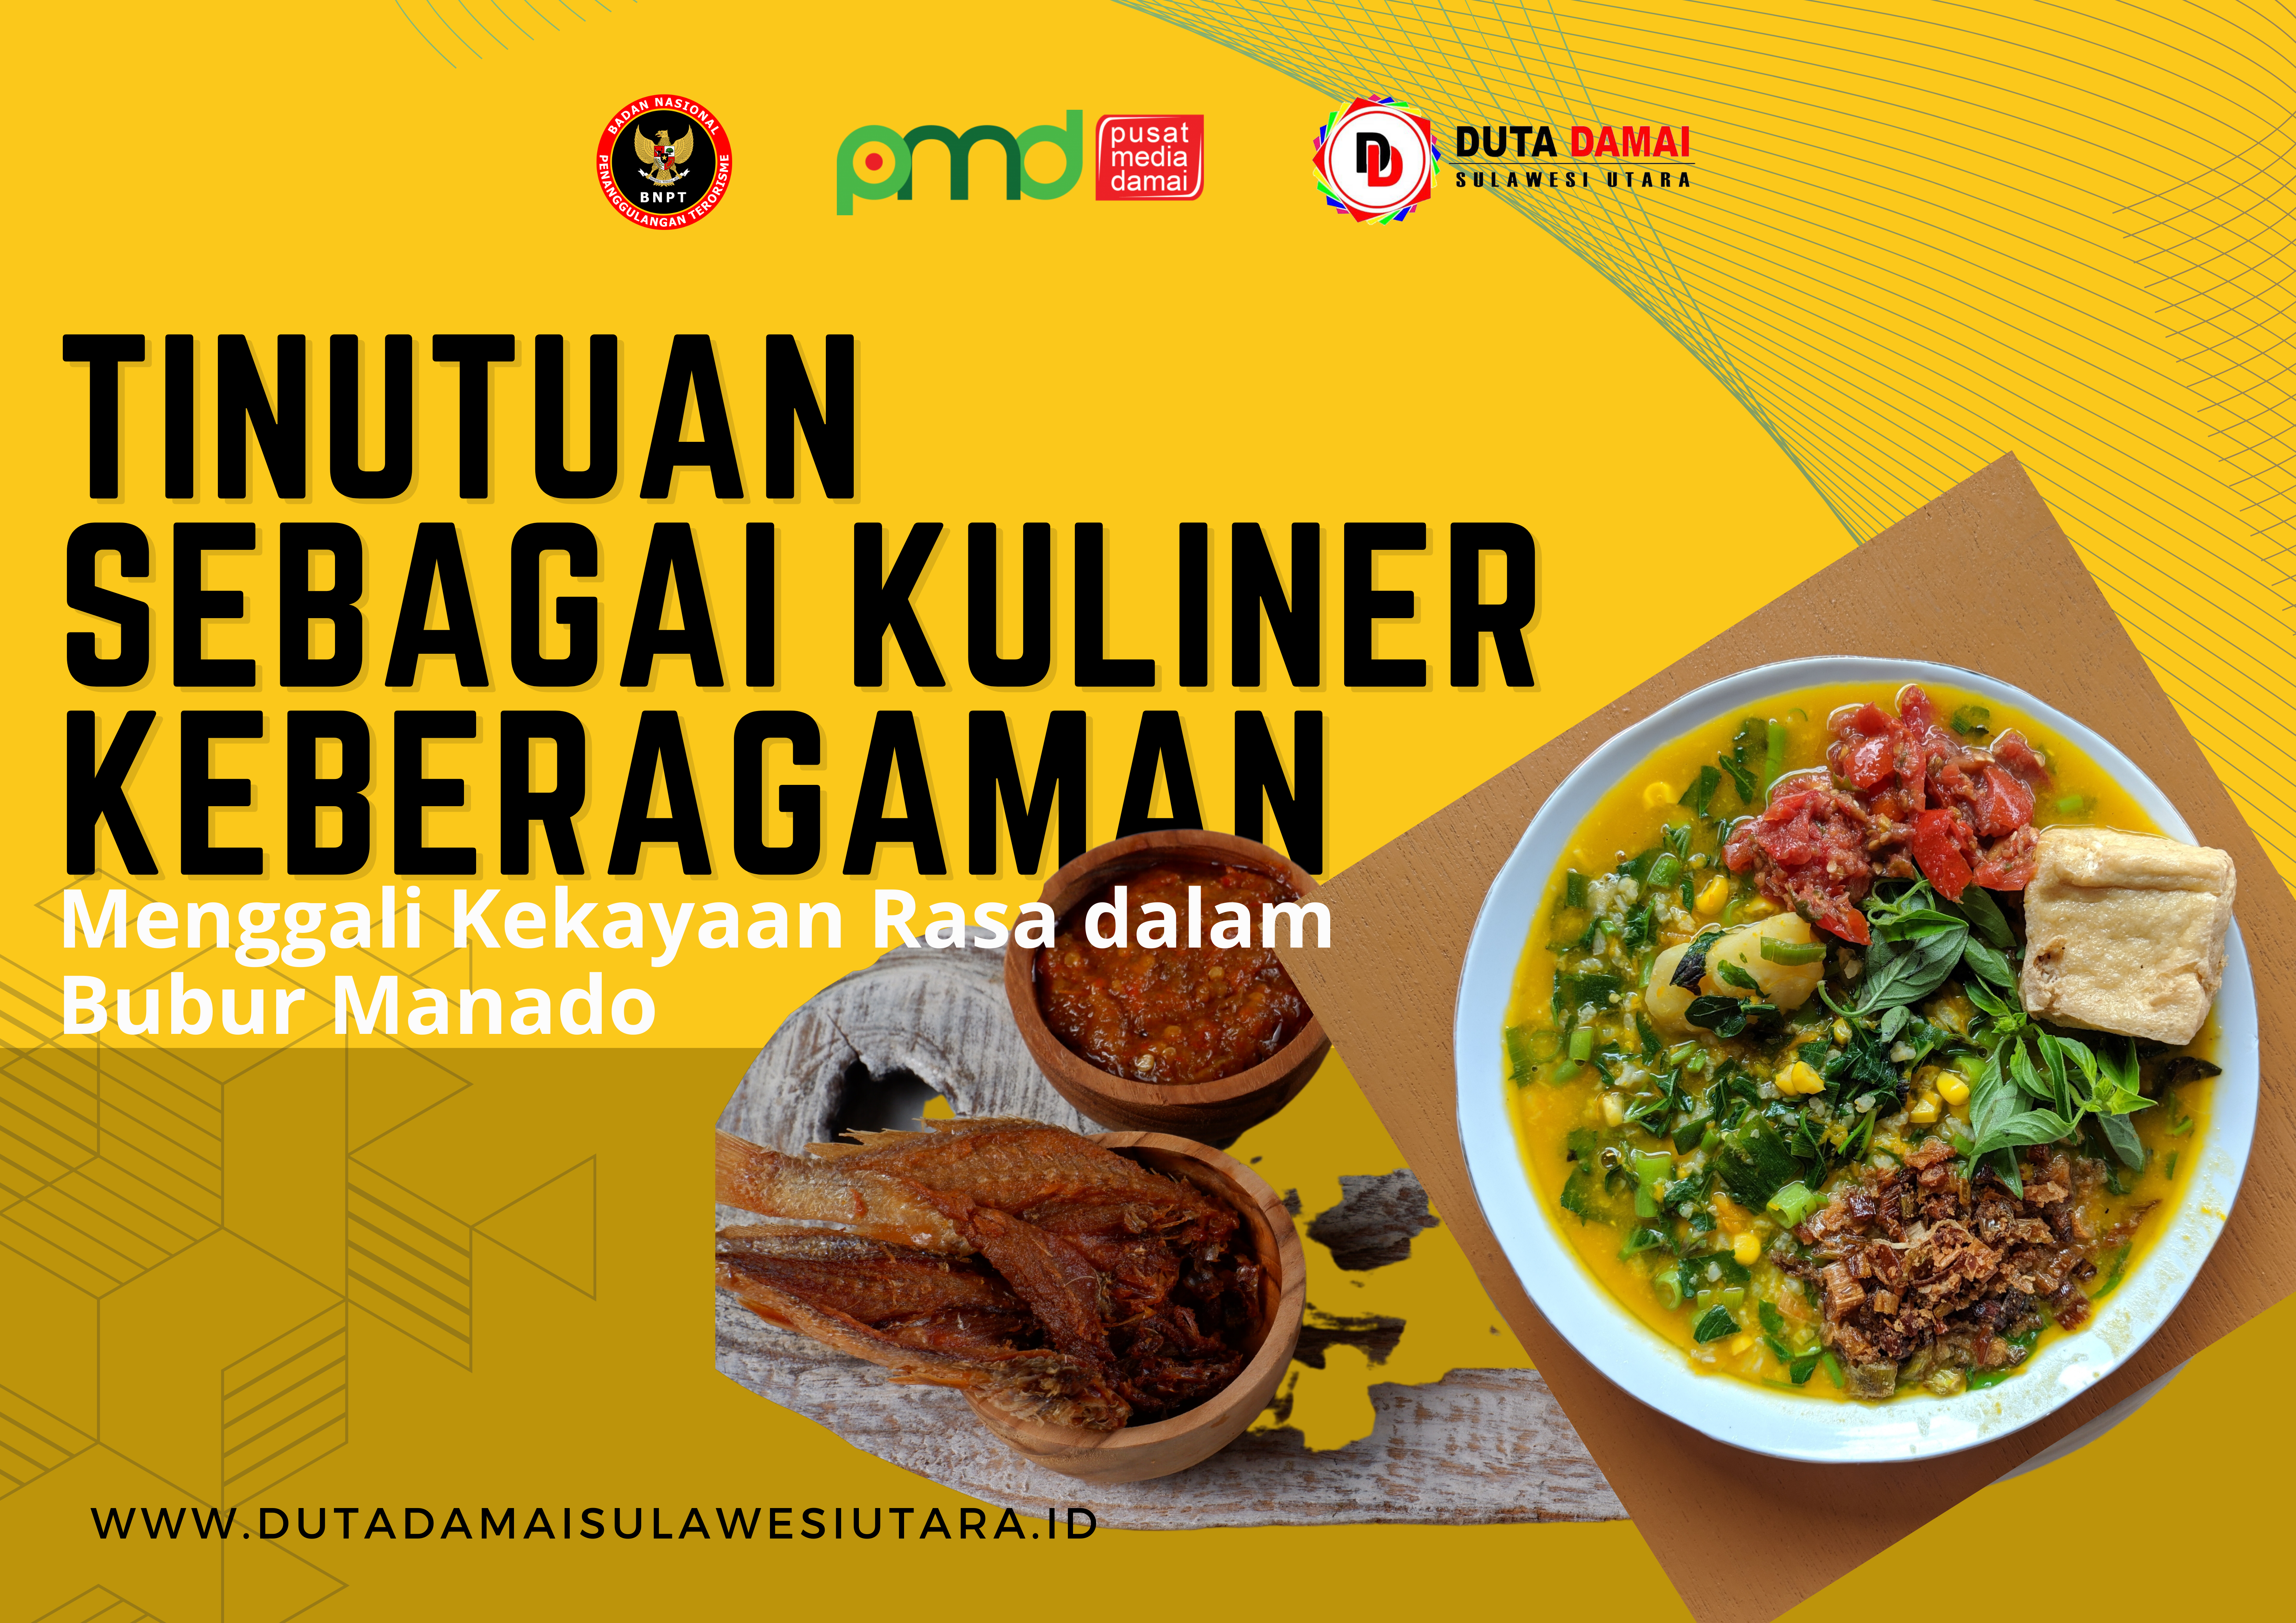 Tinutuan Sebagai Kuliner Keberagaman: Menggali Kekayaan Rasa Dalam Bubur Manado